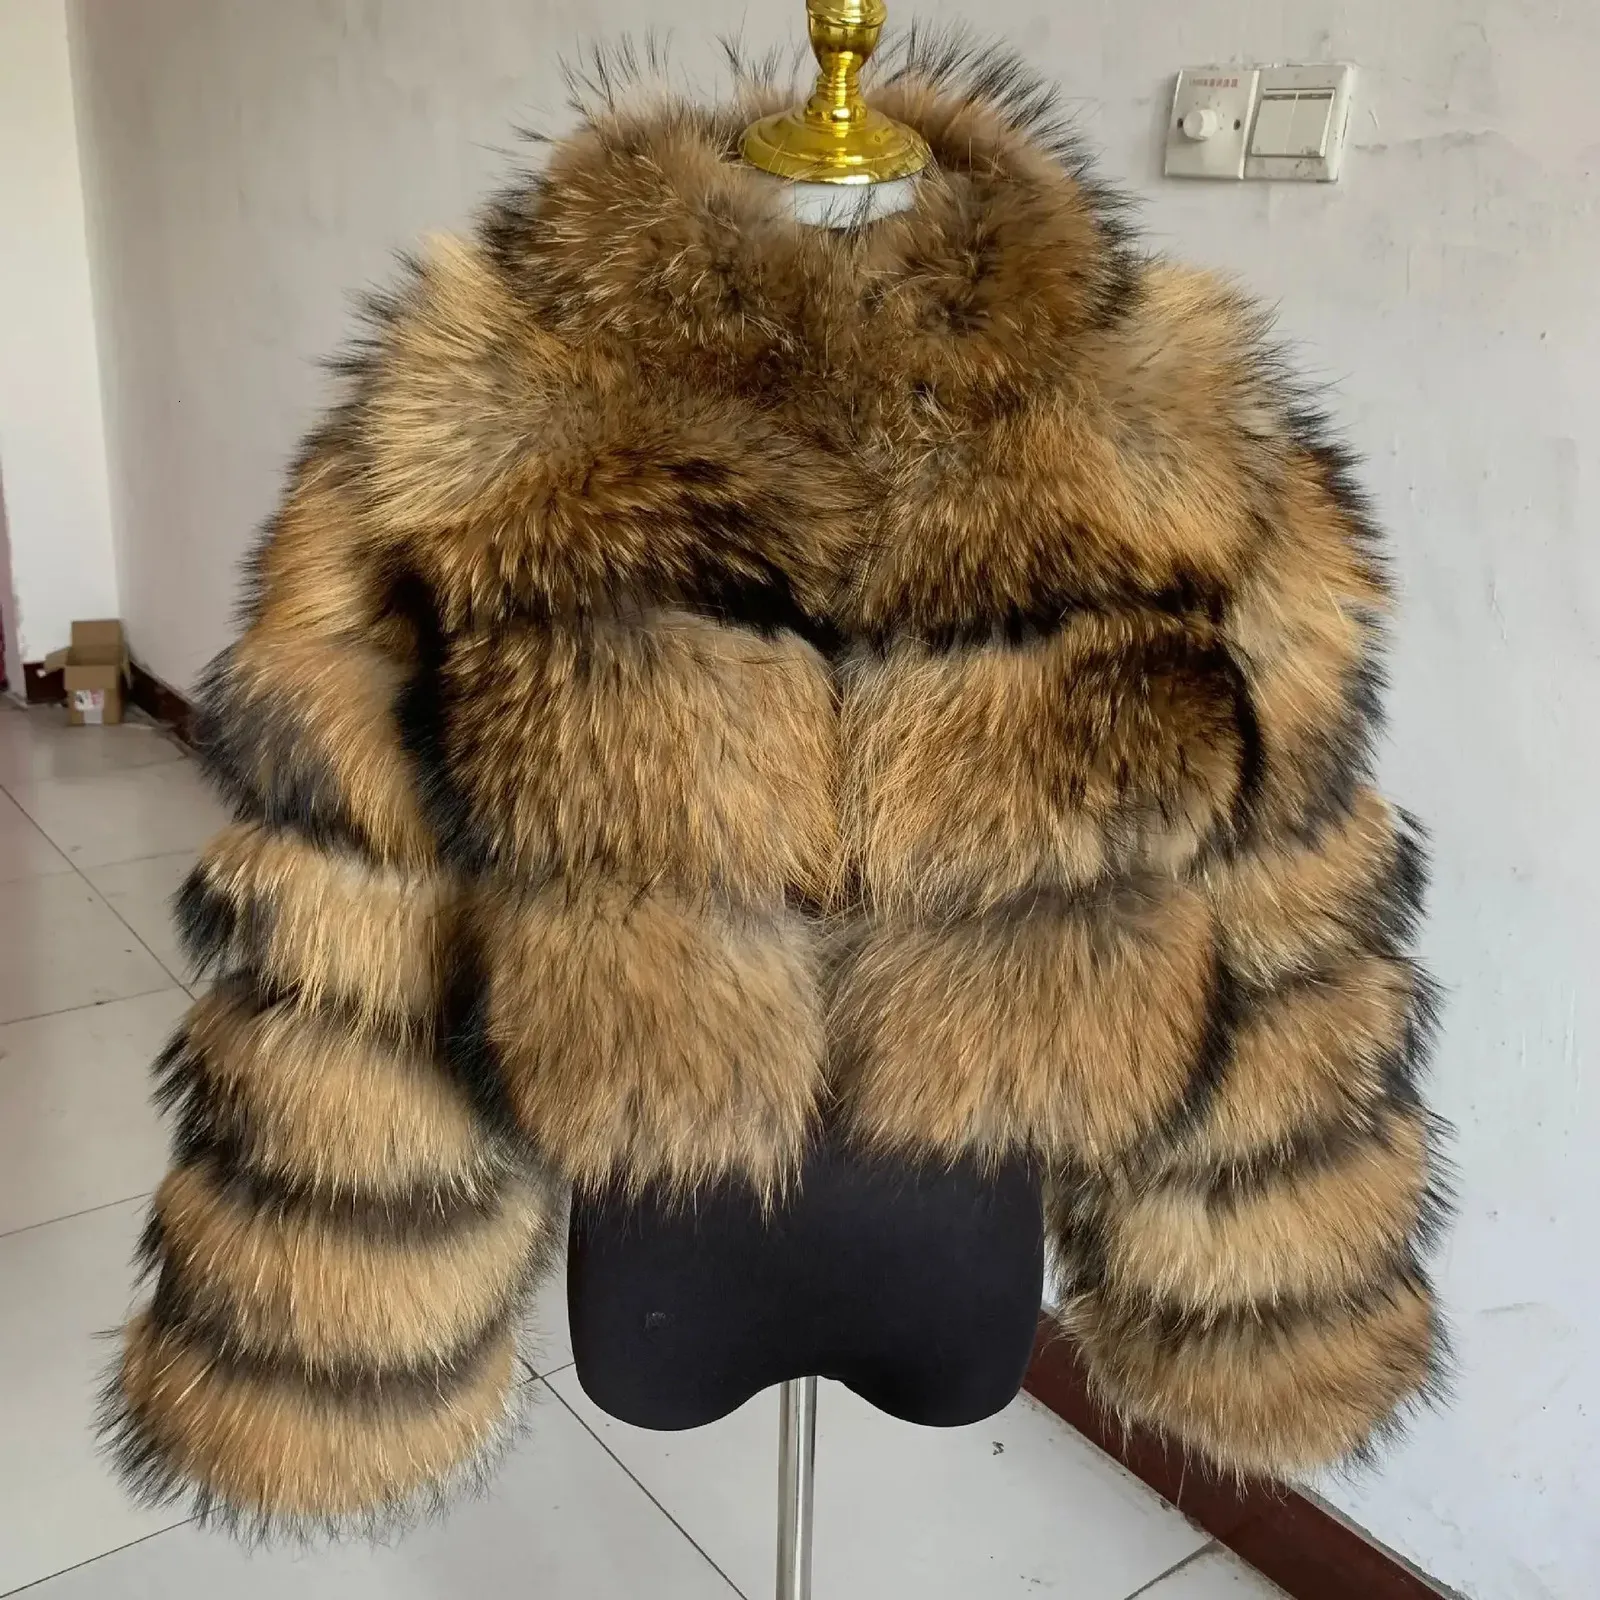 럭셔리 밍크 쇼트 코트 여성 겨울 최고 패션 가짜 모피 코트 우아한 두꺼운 따뜻한 겉옷 가짜 모피 여자 지퍼 가피 재킷 240125